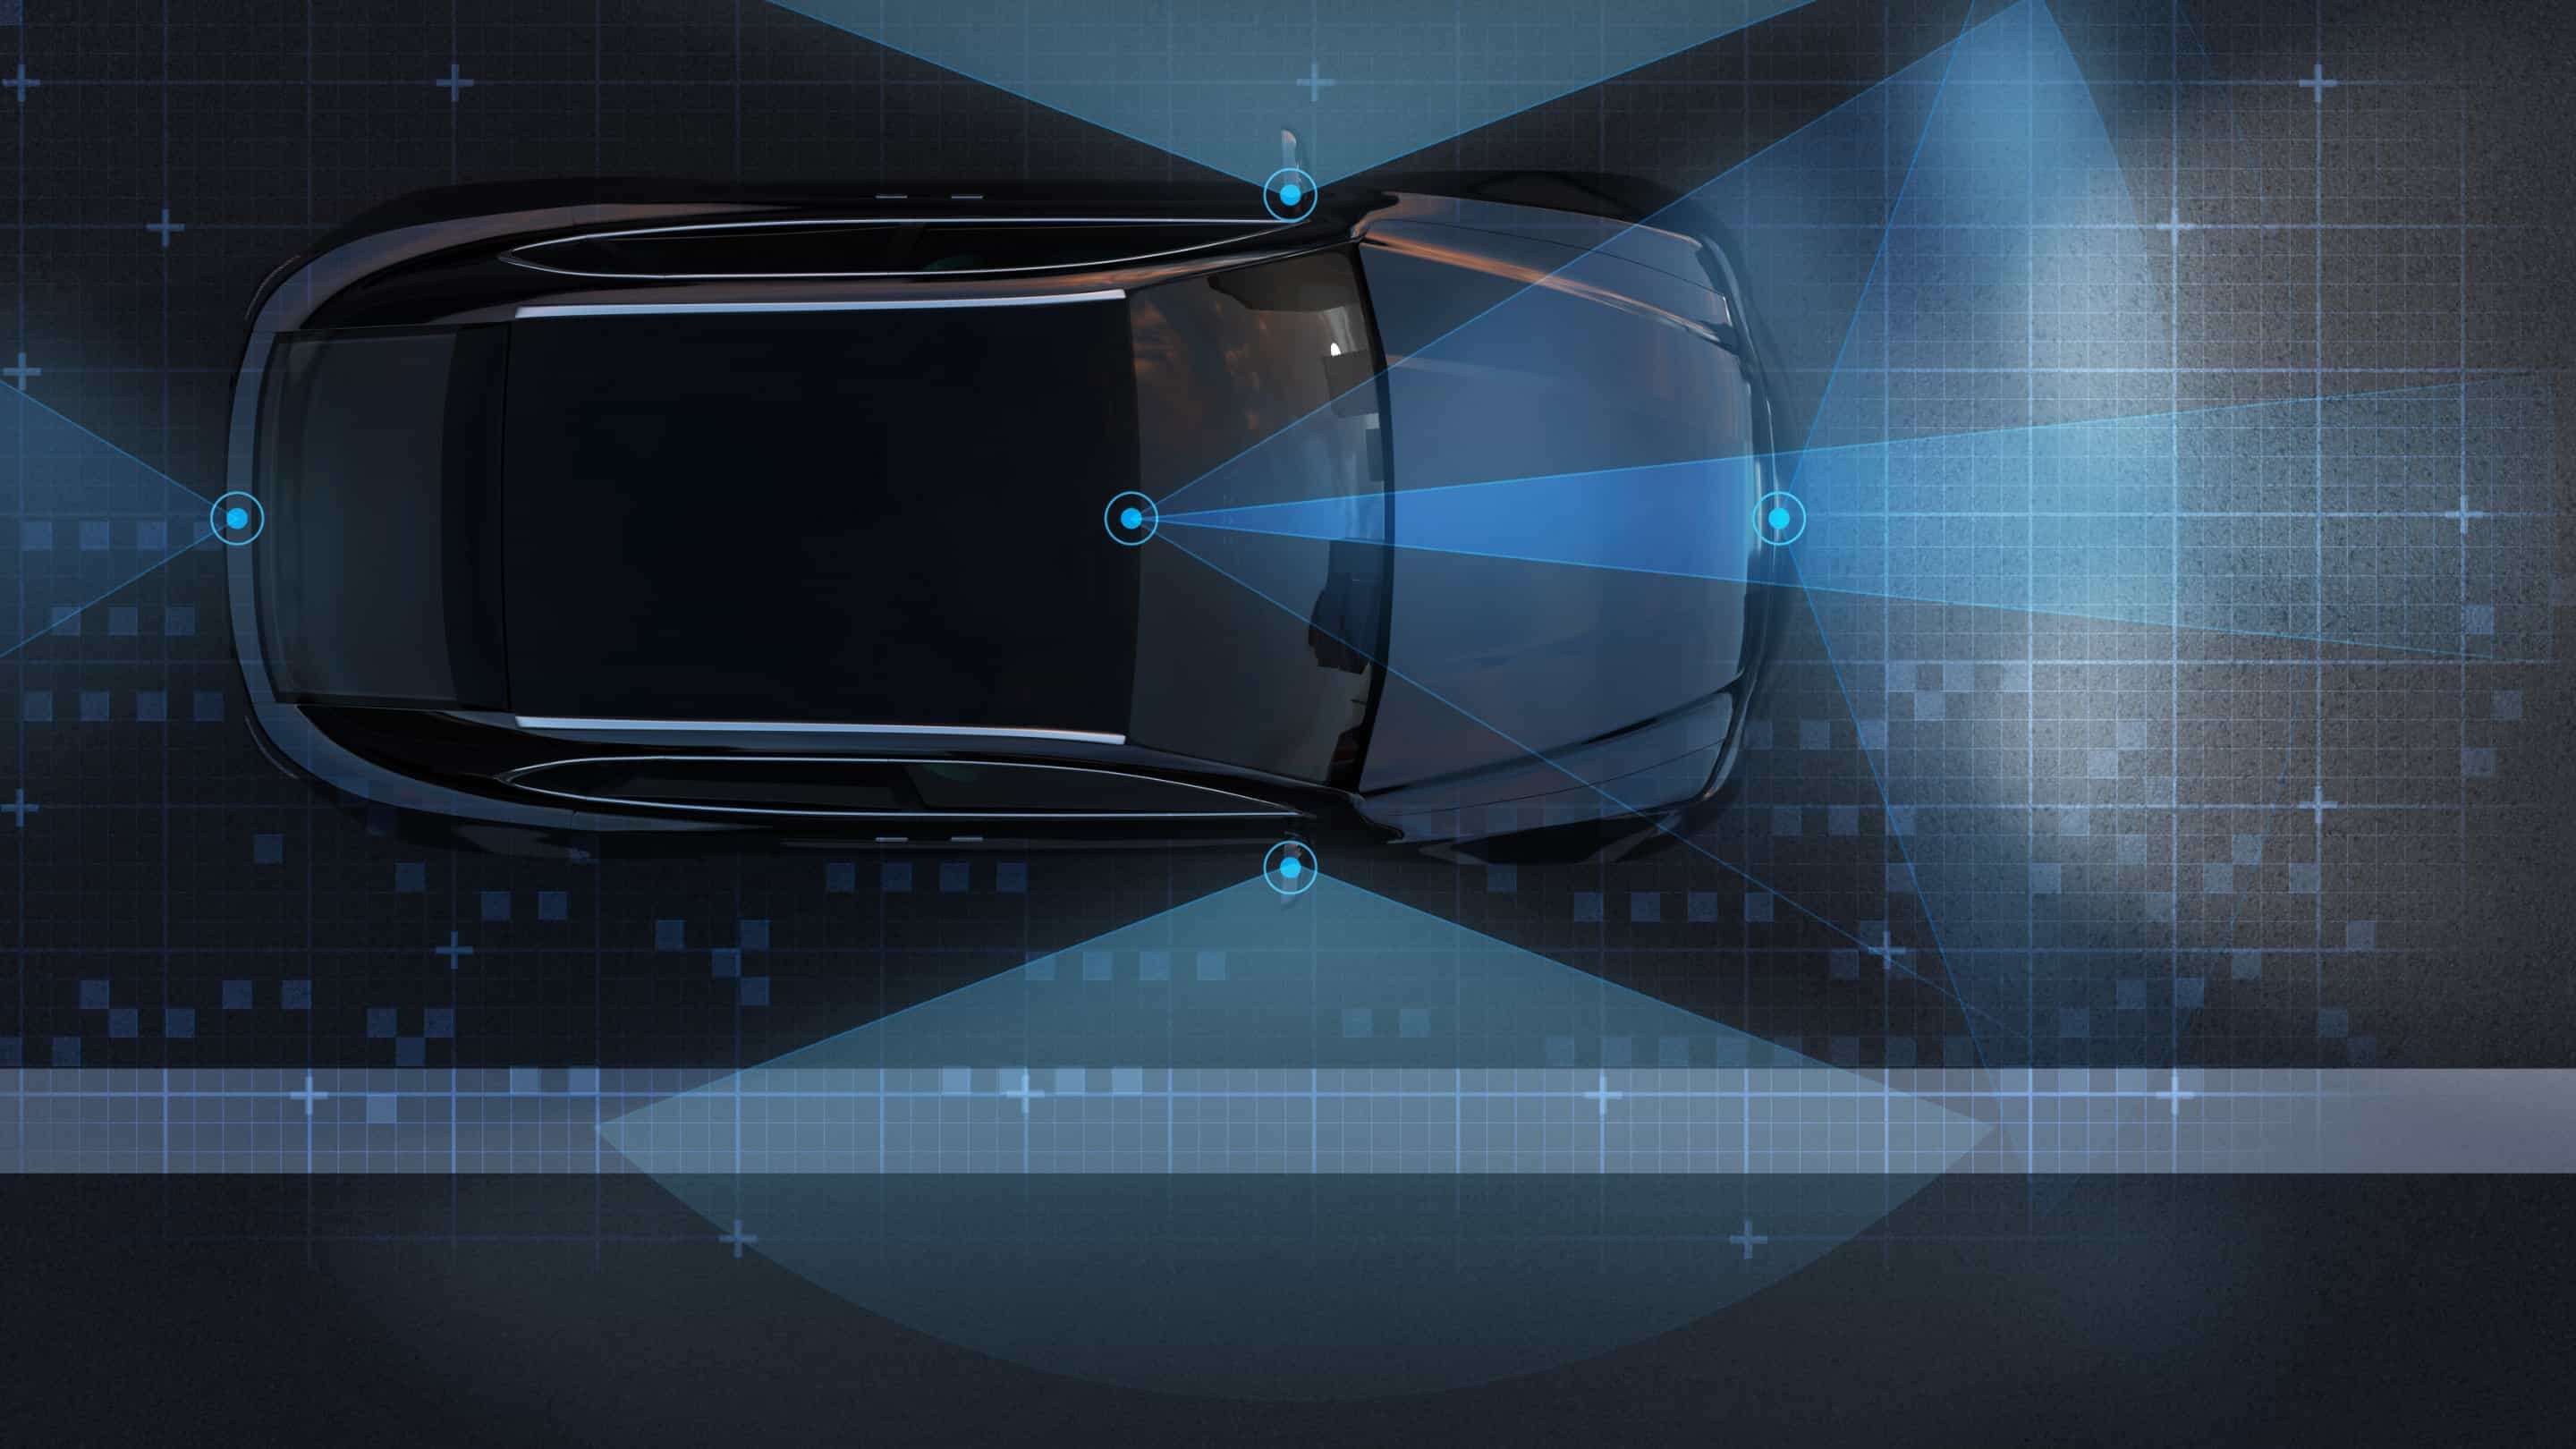 زجاج Impactinator® - زجاج واقي بمستشعر Lidar سيارة ذات خطوط ونقاط زرقاء